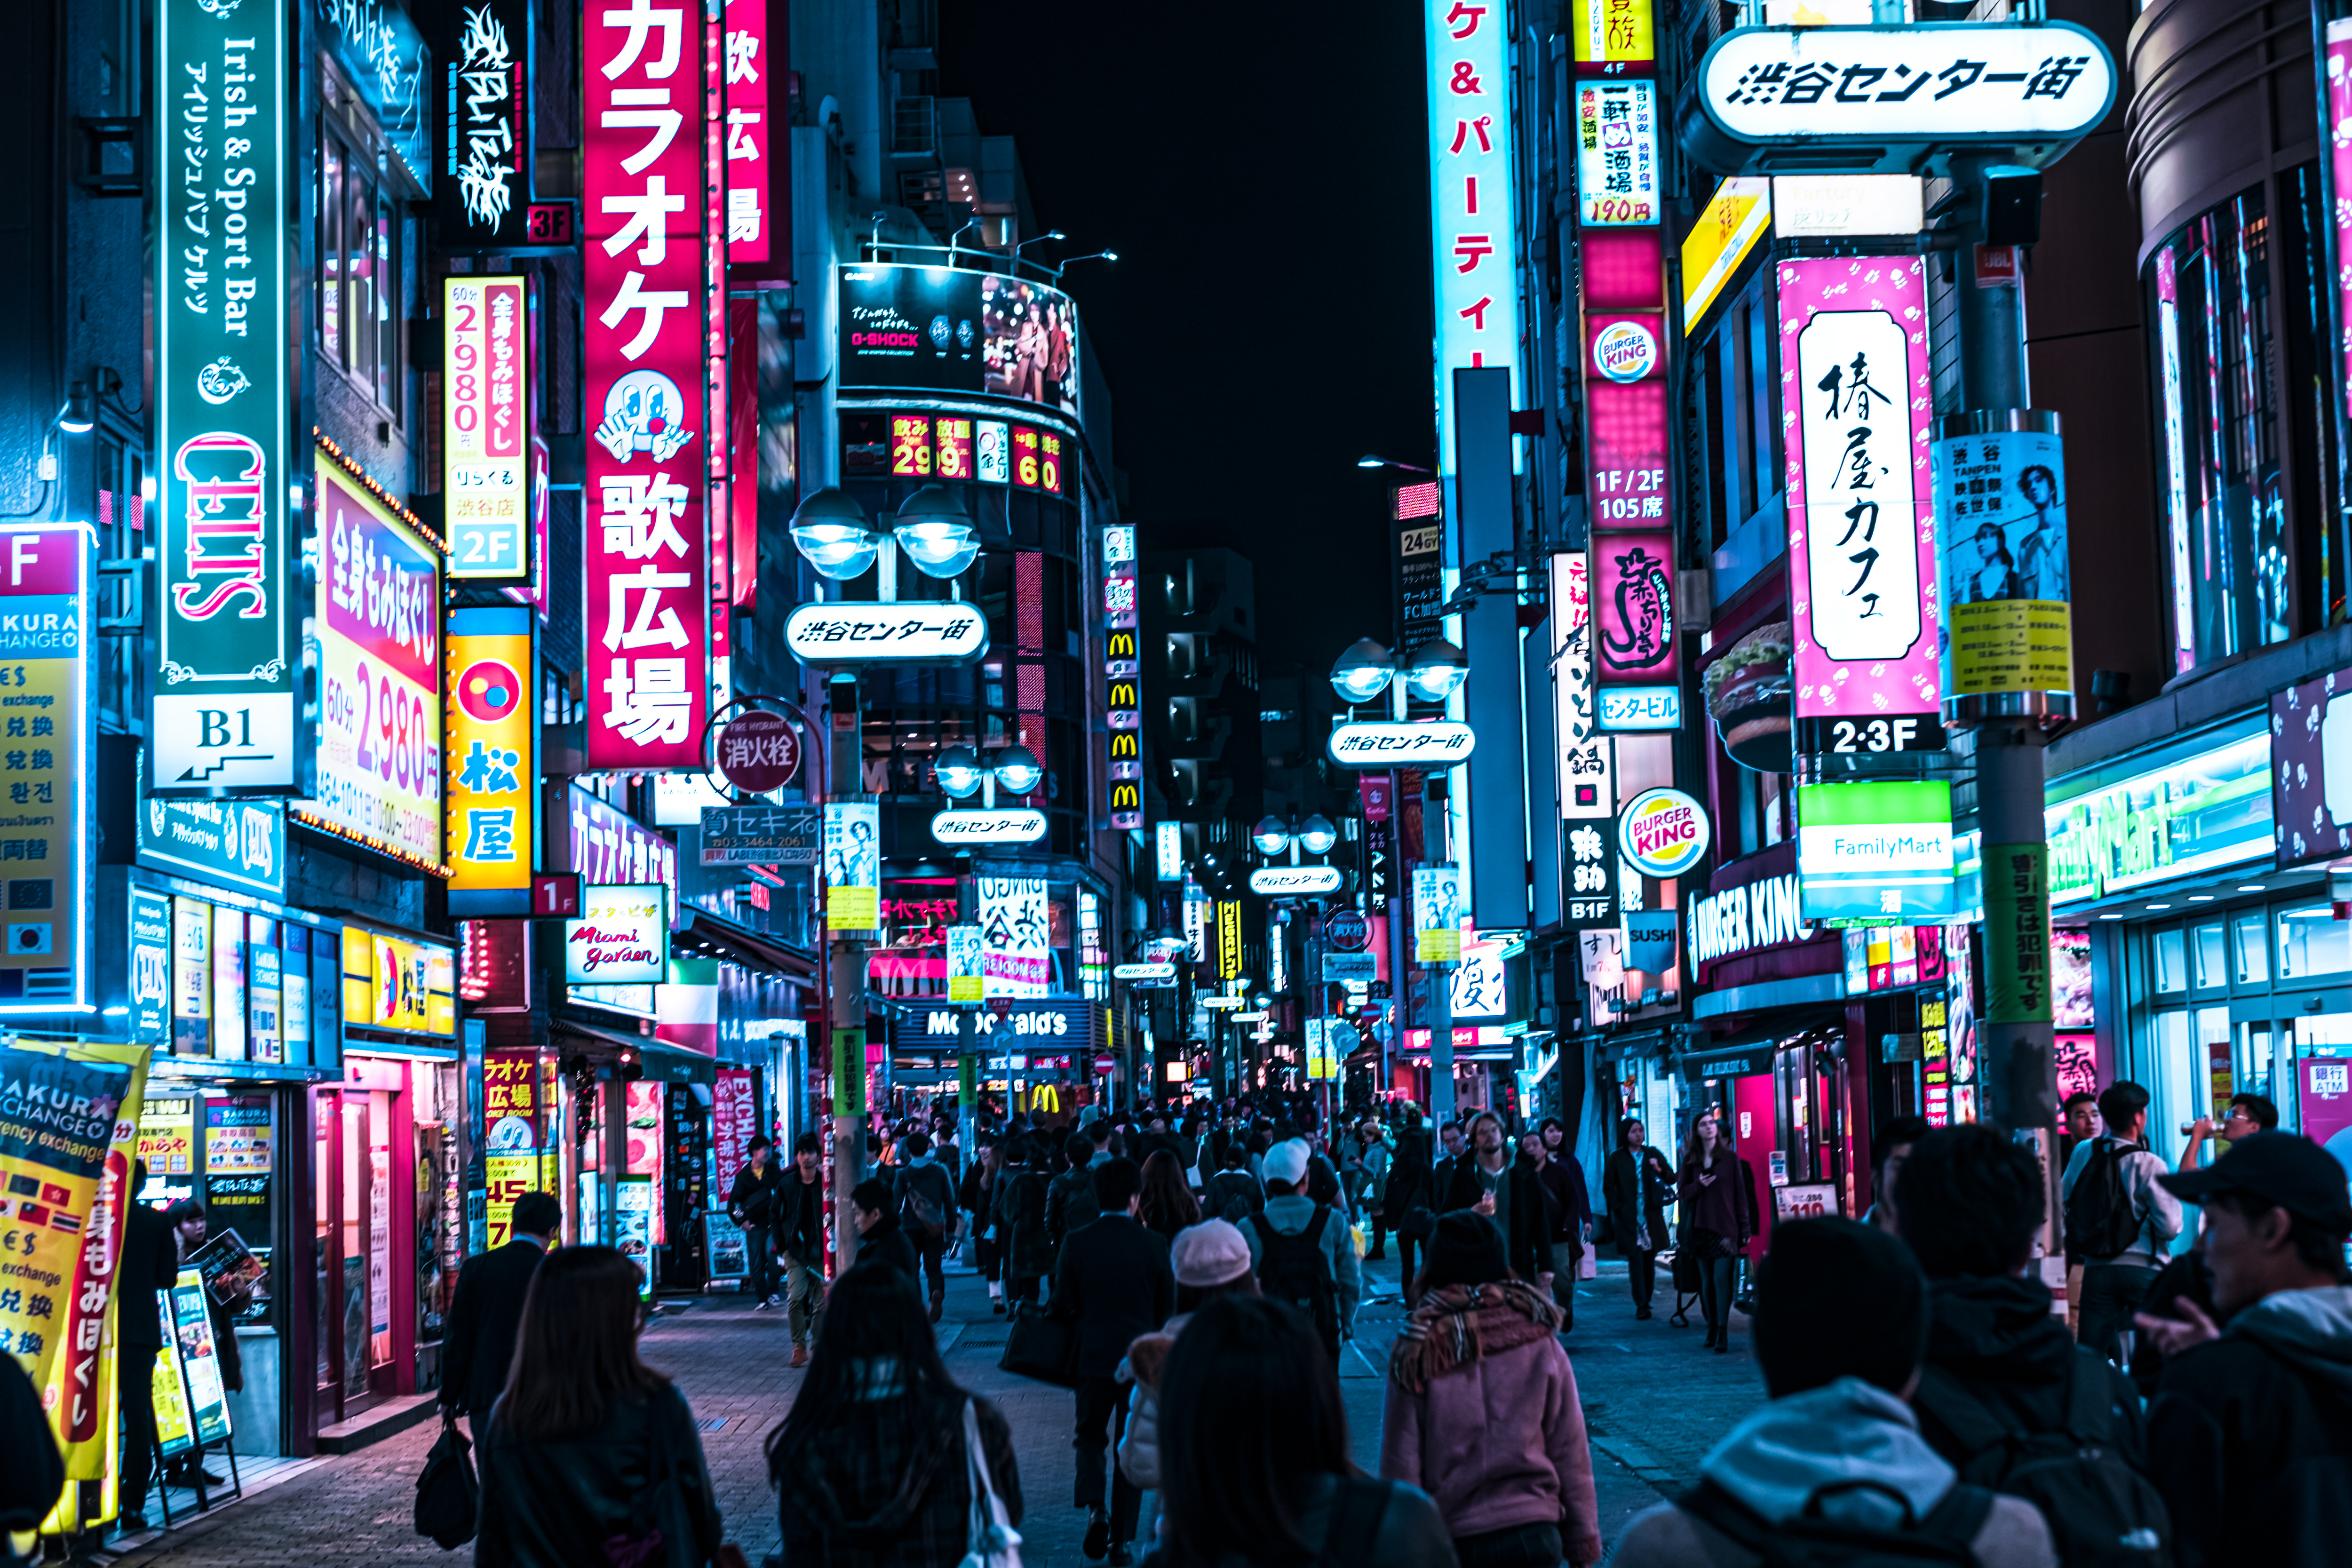 渋谷センター街のサイバーパンクの写真 画像 フリー素材 ぱくたそ